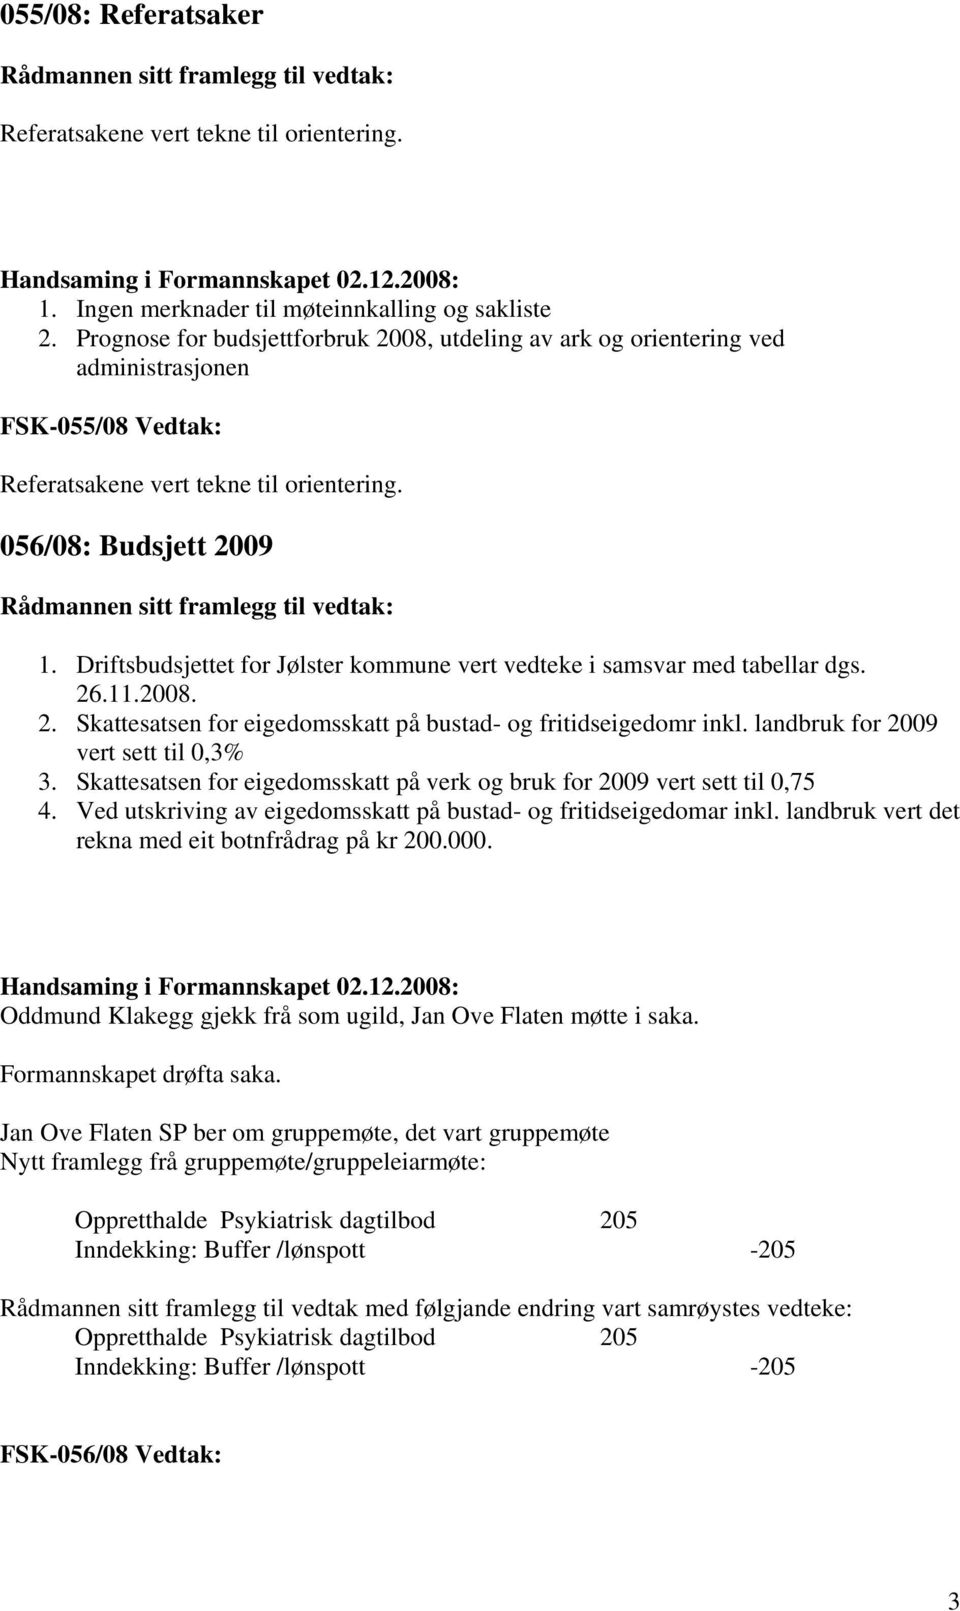 Driftsbudsjettet for Jølster kommune vert vedteke i samsvar med tabellar dgs. 26.11.2008. 2. Skattesatsen for eigedomsskatt på bustad- og fritidseigedomr inkl. landbruk for 2009 vert sett til 0,3% 3.